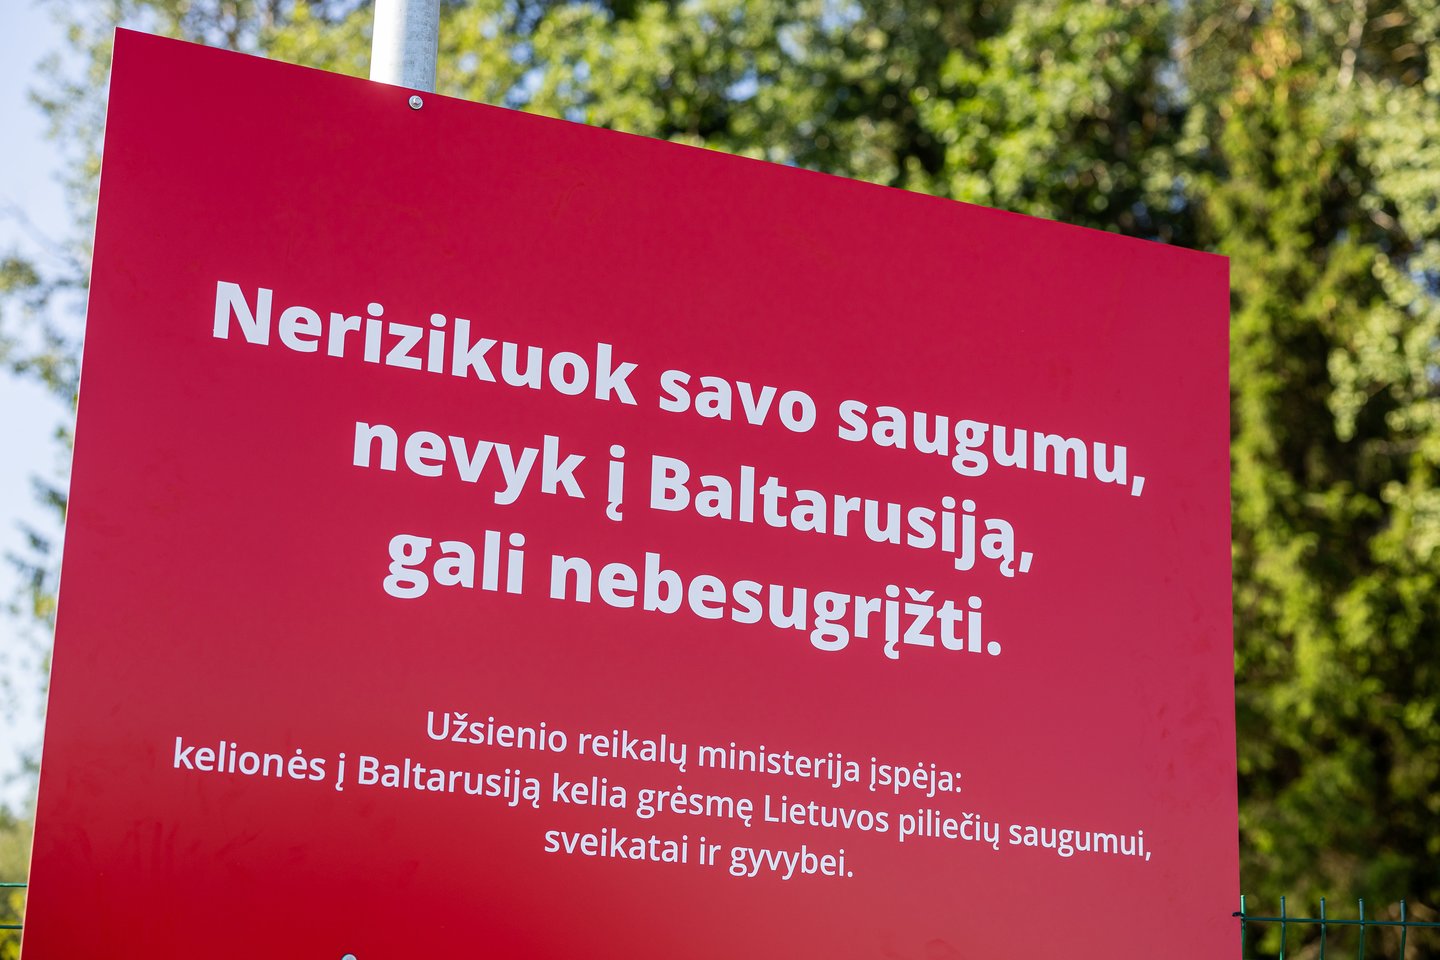 Lietuvos politikai ir institucijų atstovai griežtai perspėja nevykti į Baltarusiją.<br>Ž.Gedvilos (ELTA) nuotr.